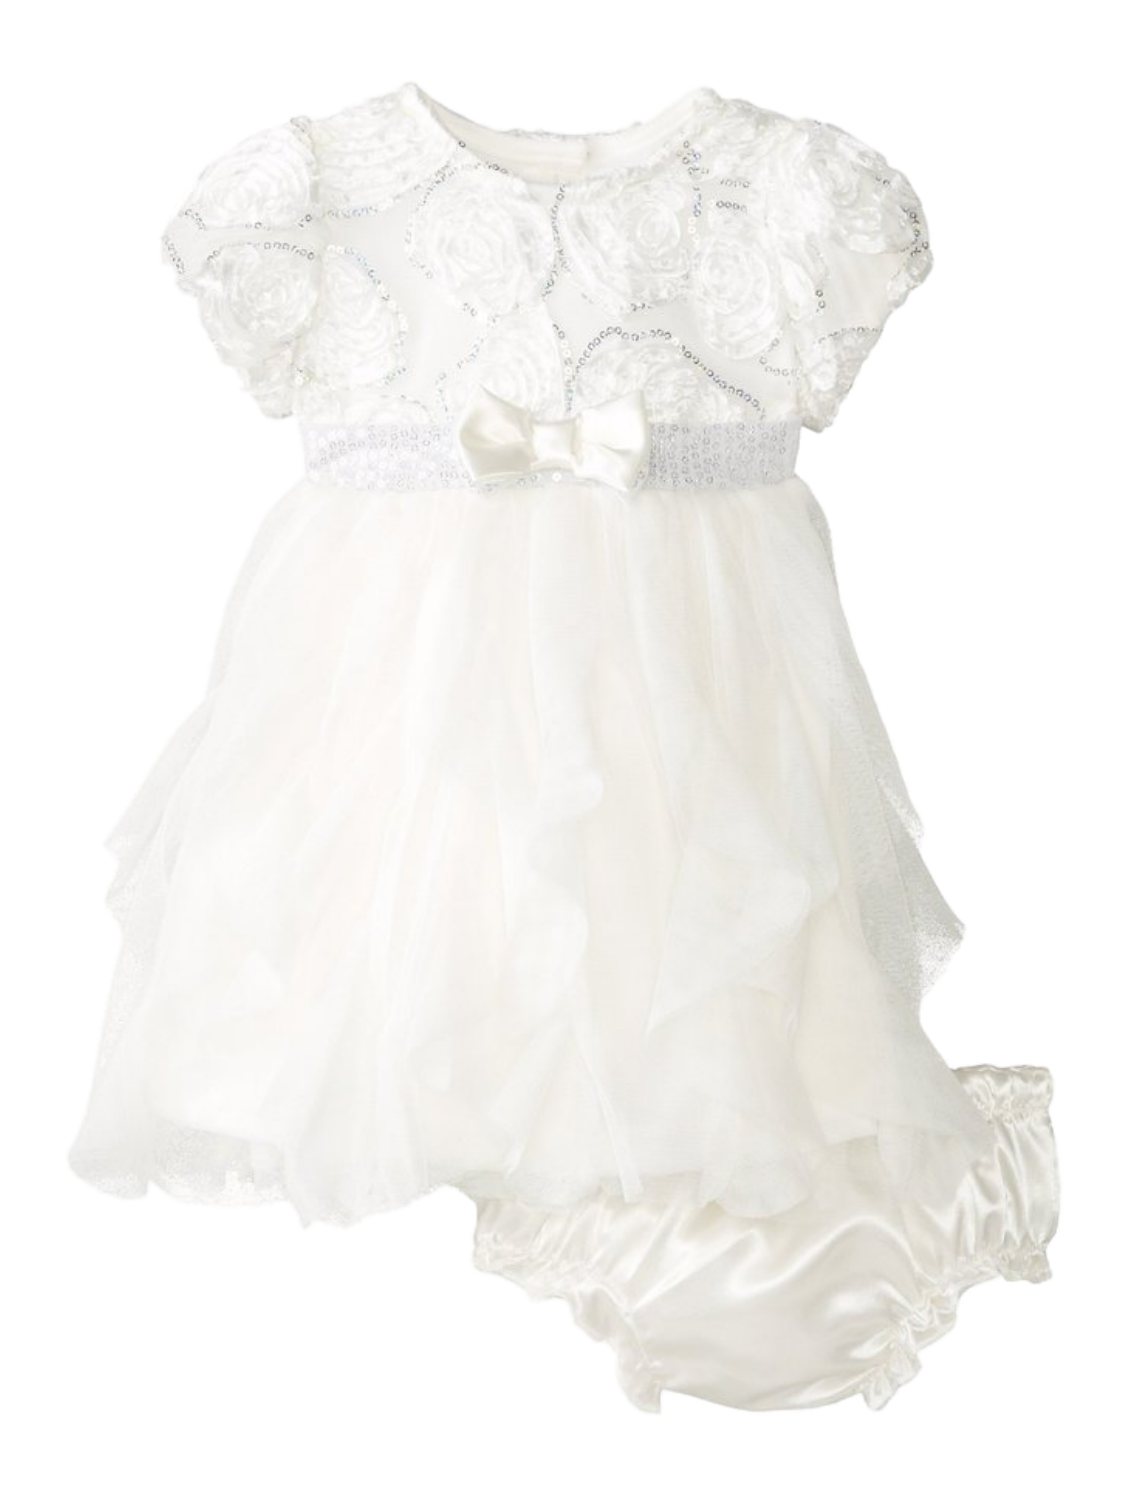 Nannette Infant Girls White Rosette Dress 2 PC Formal Holiday Party Dress